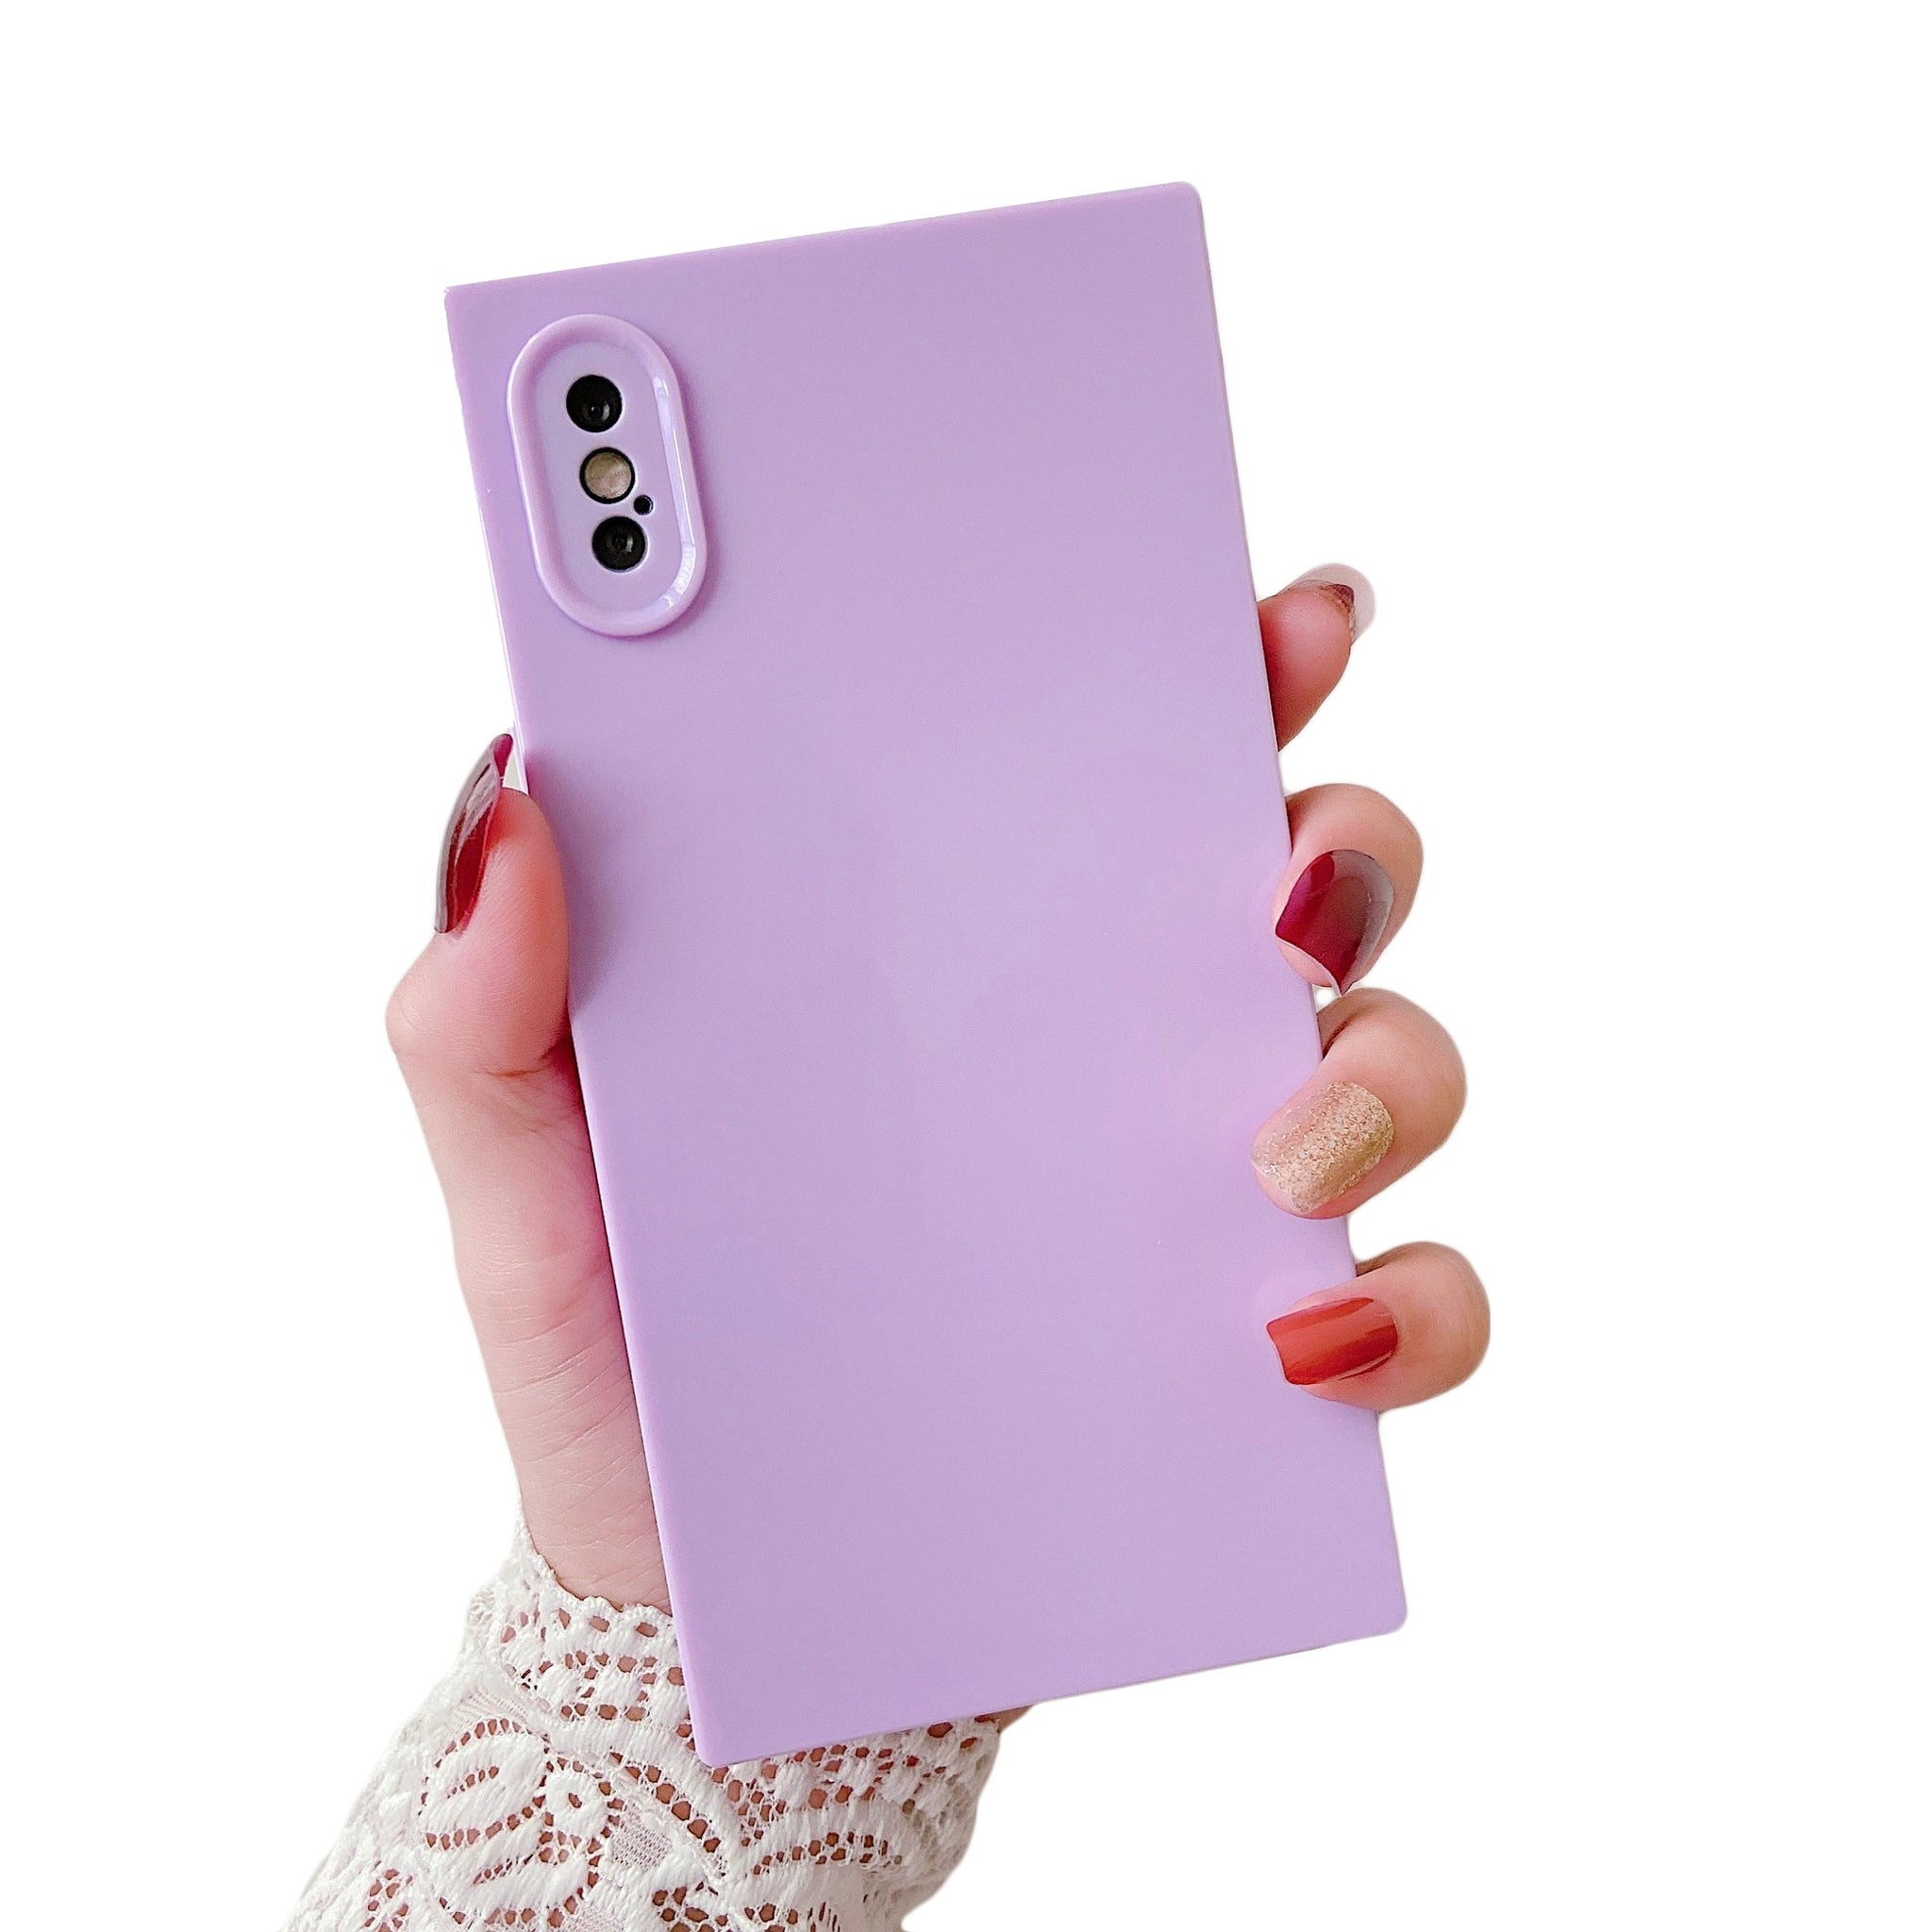 iPhone XR Case Square Plain Color (Purple)